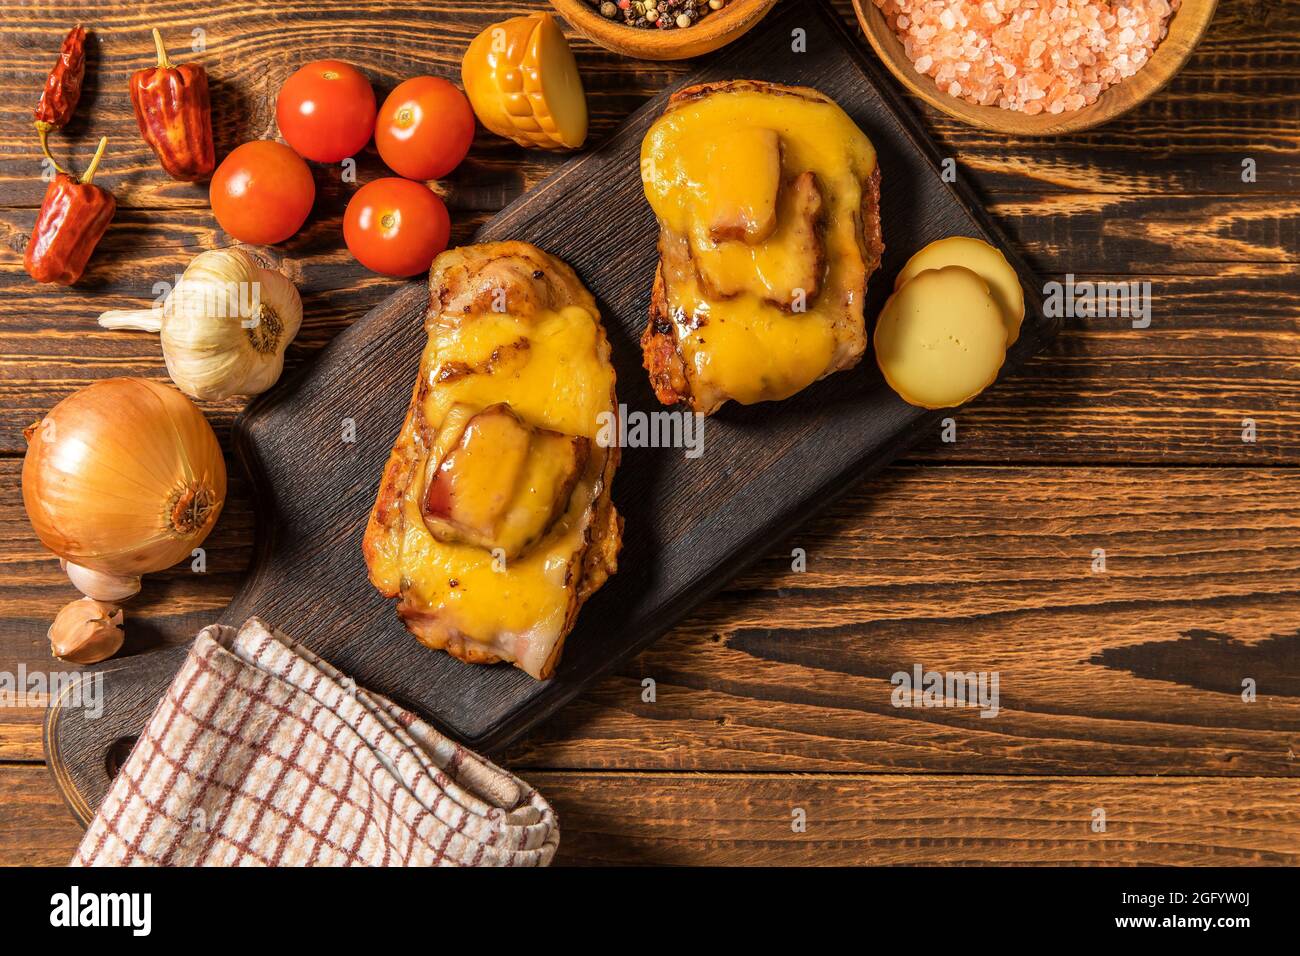 Hacher le porc mariné dans de la sauce moutarde avec du bacon et du fromage. Viande grillée au fromage. Portions de viande sur la table. Banque D'Images